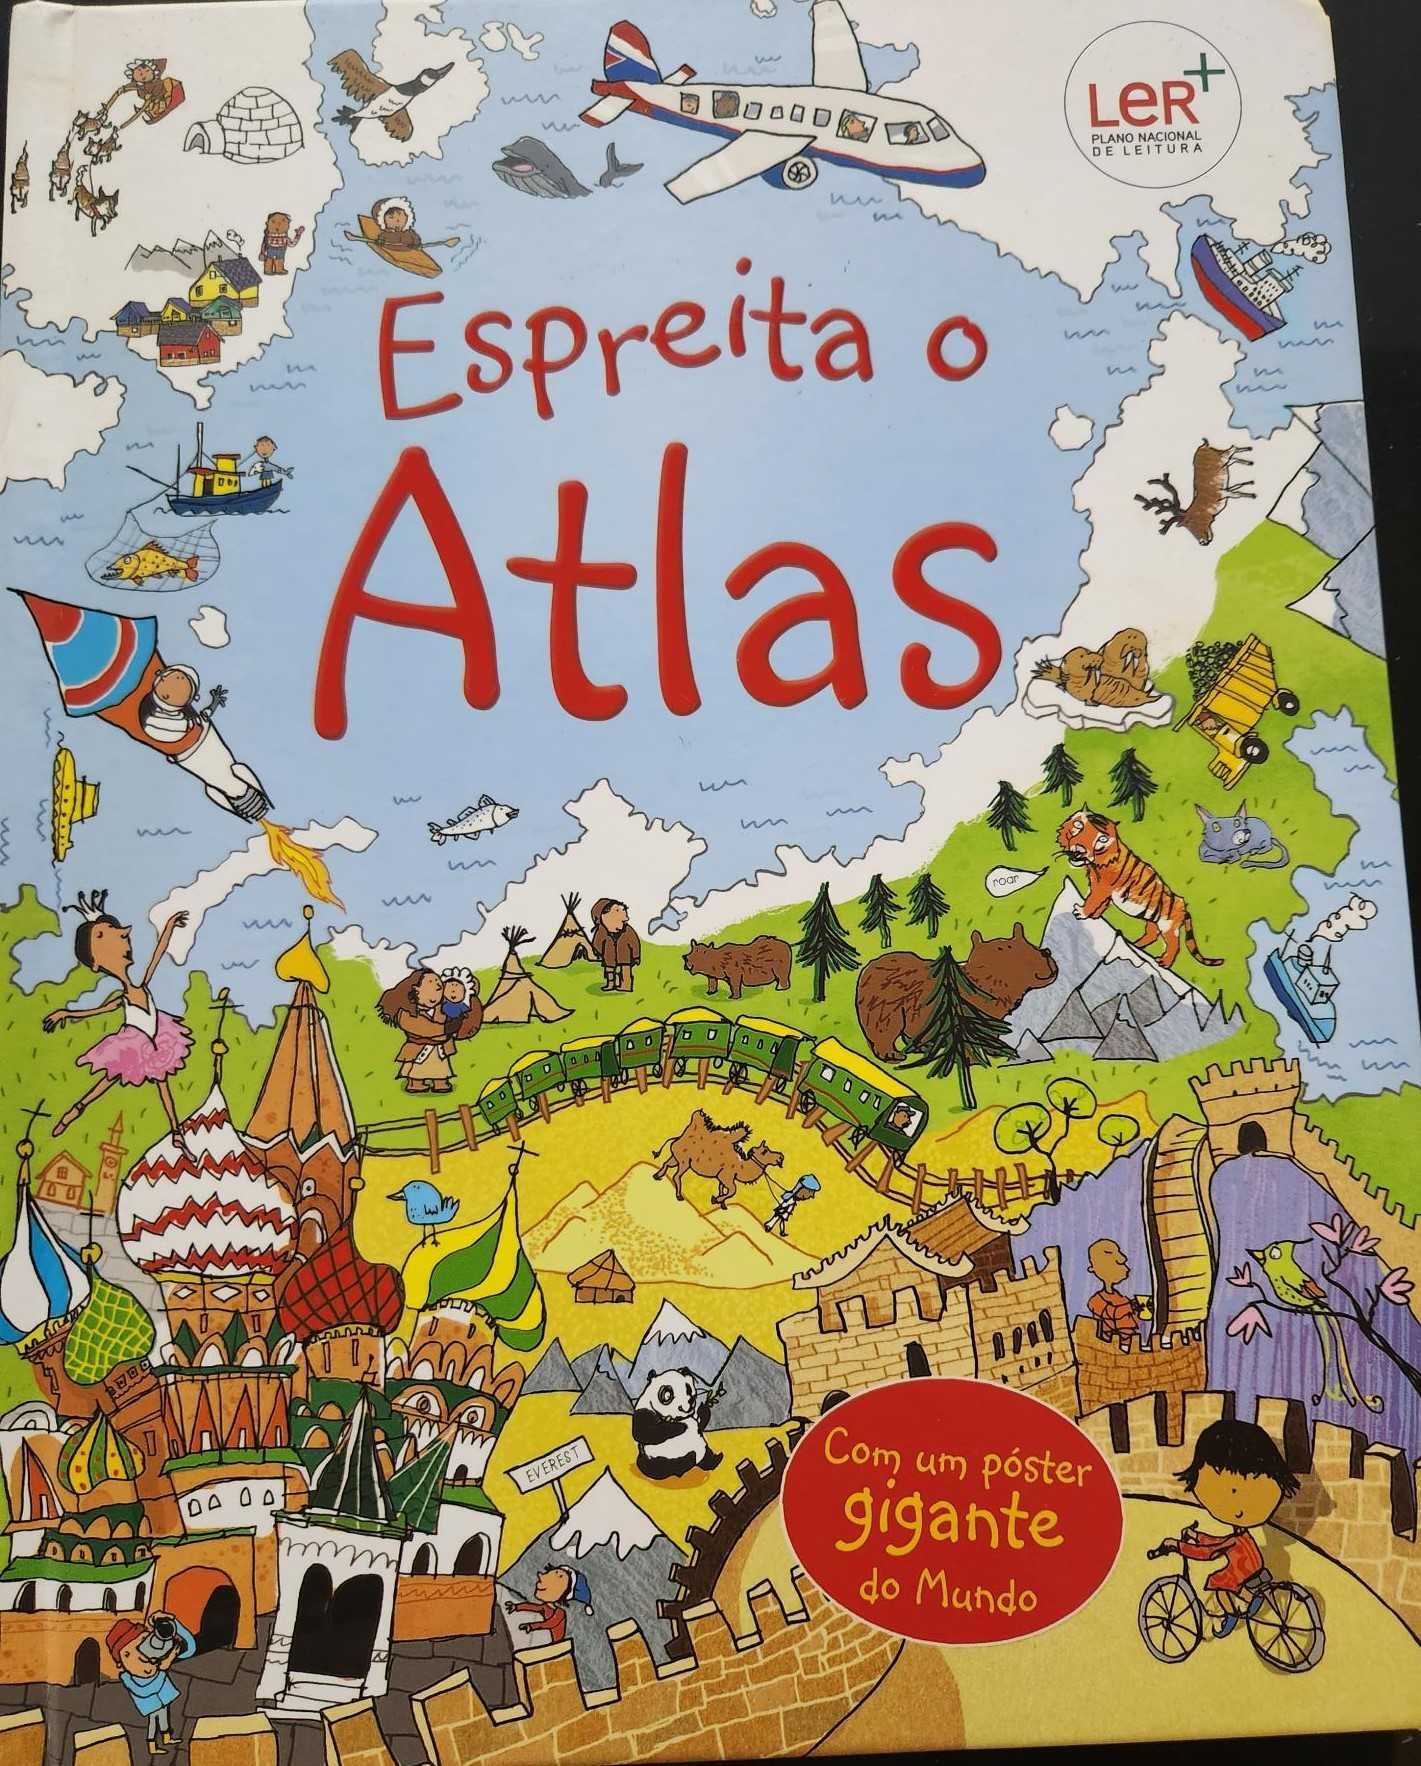 Livro "Espreita o Atlas" - Recomendado Plano de Leitura - 8 euros